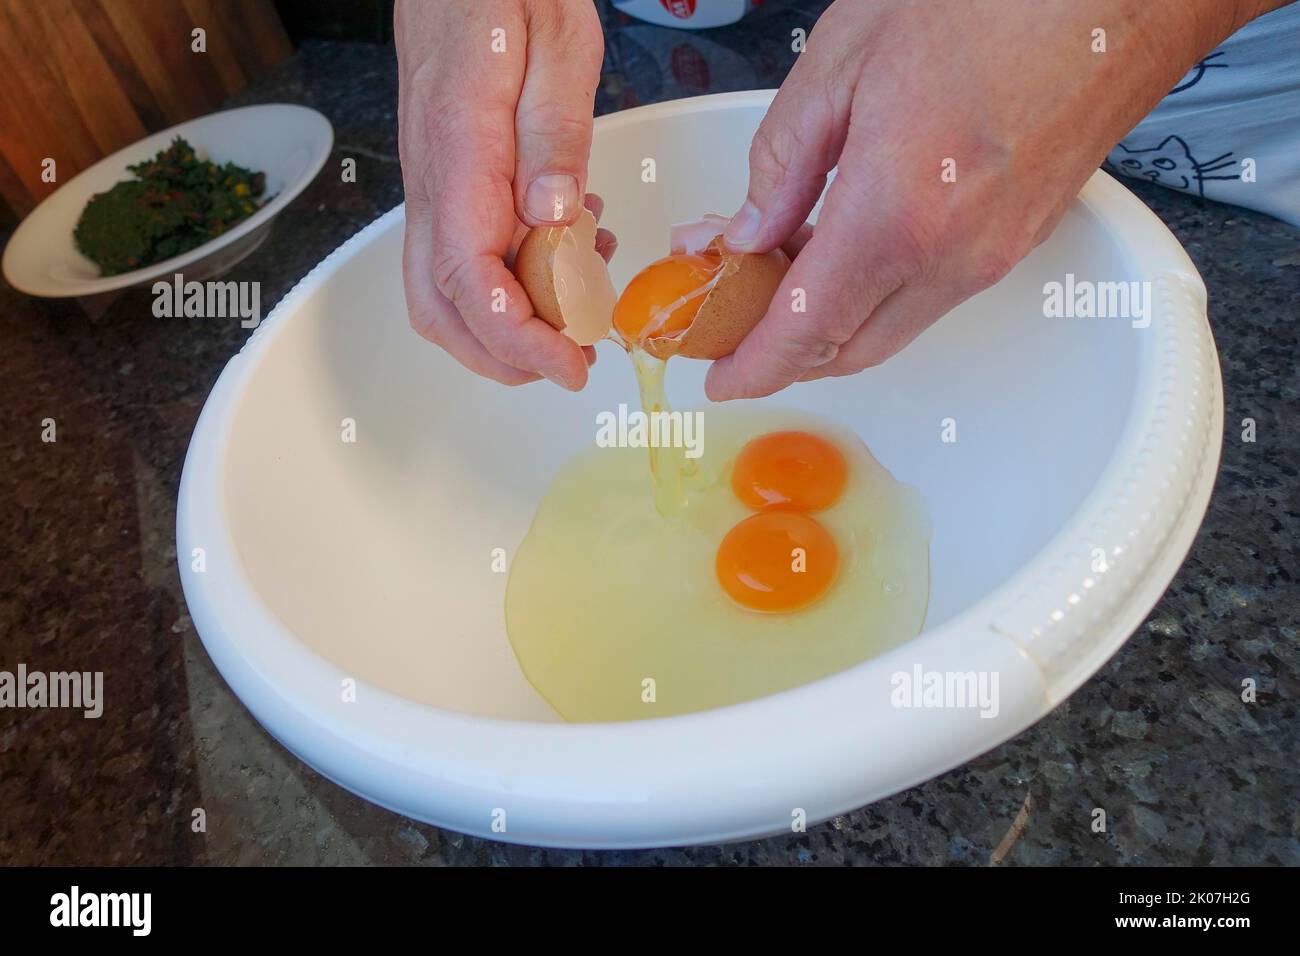 Swabian cuisine, preparing Swiss chard cake, beating eggs, egg yolk, egg white, egg shell, mixing bowl, men's hands, making hearty pastries, cakes Stock Photo